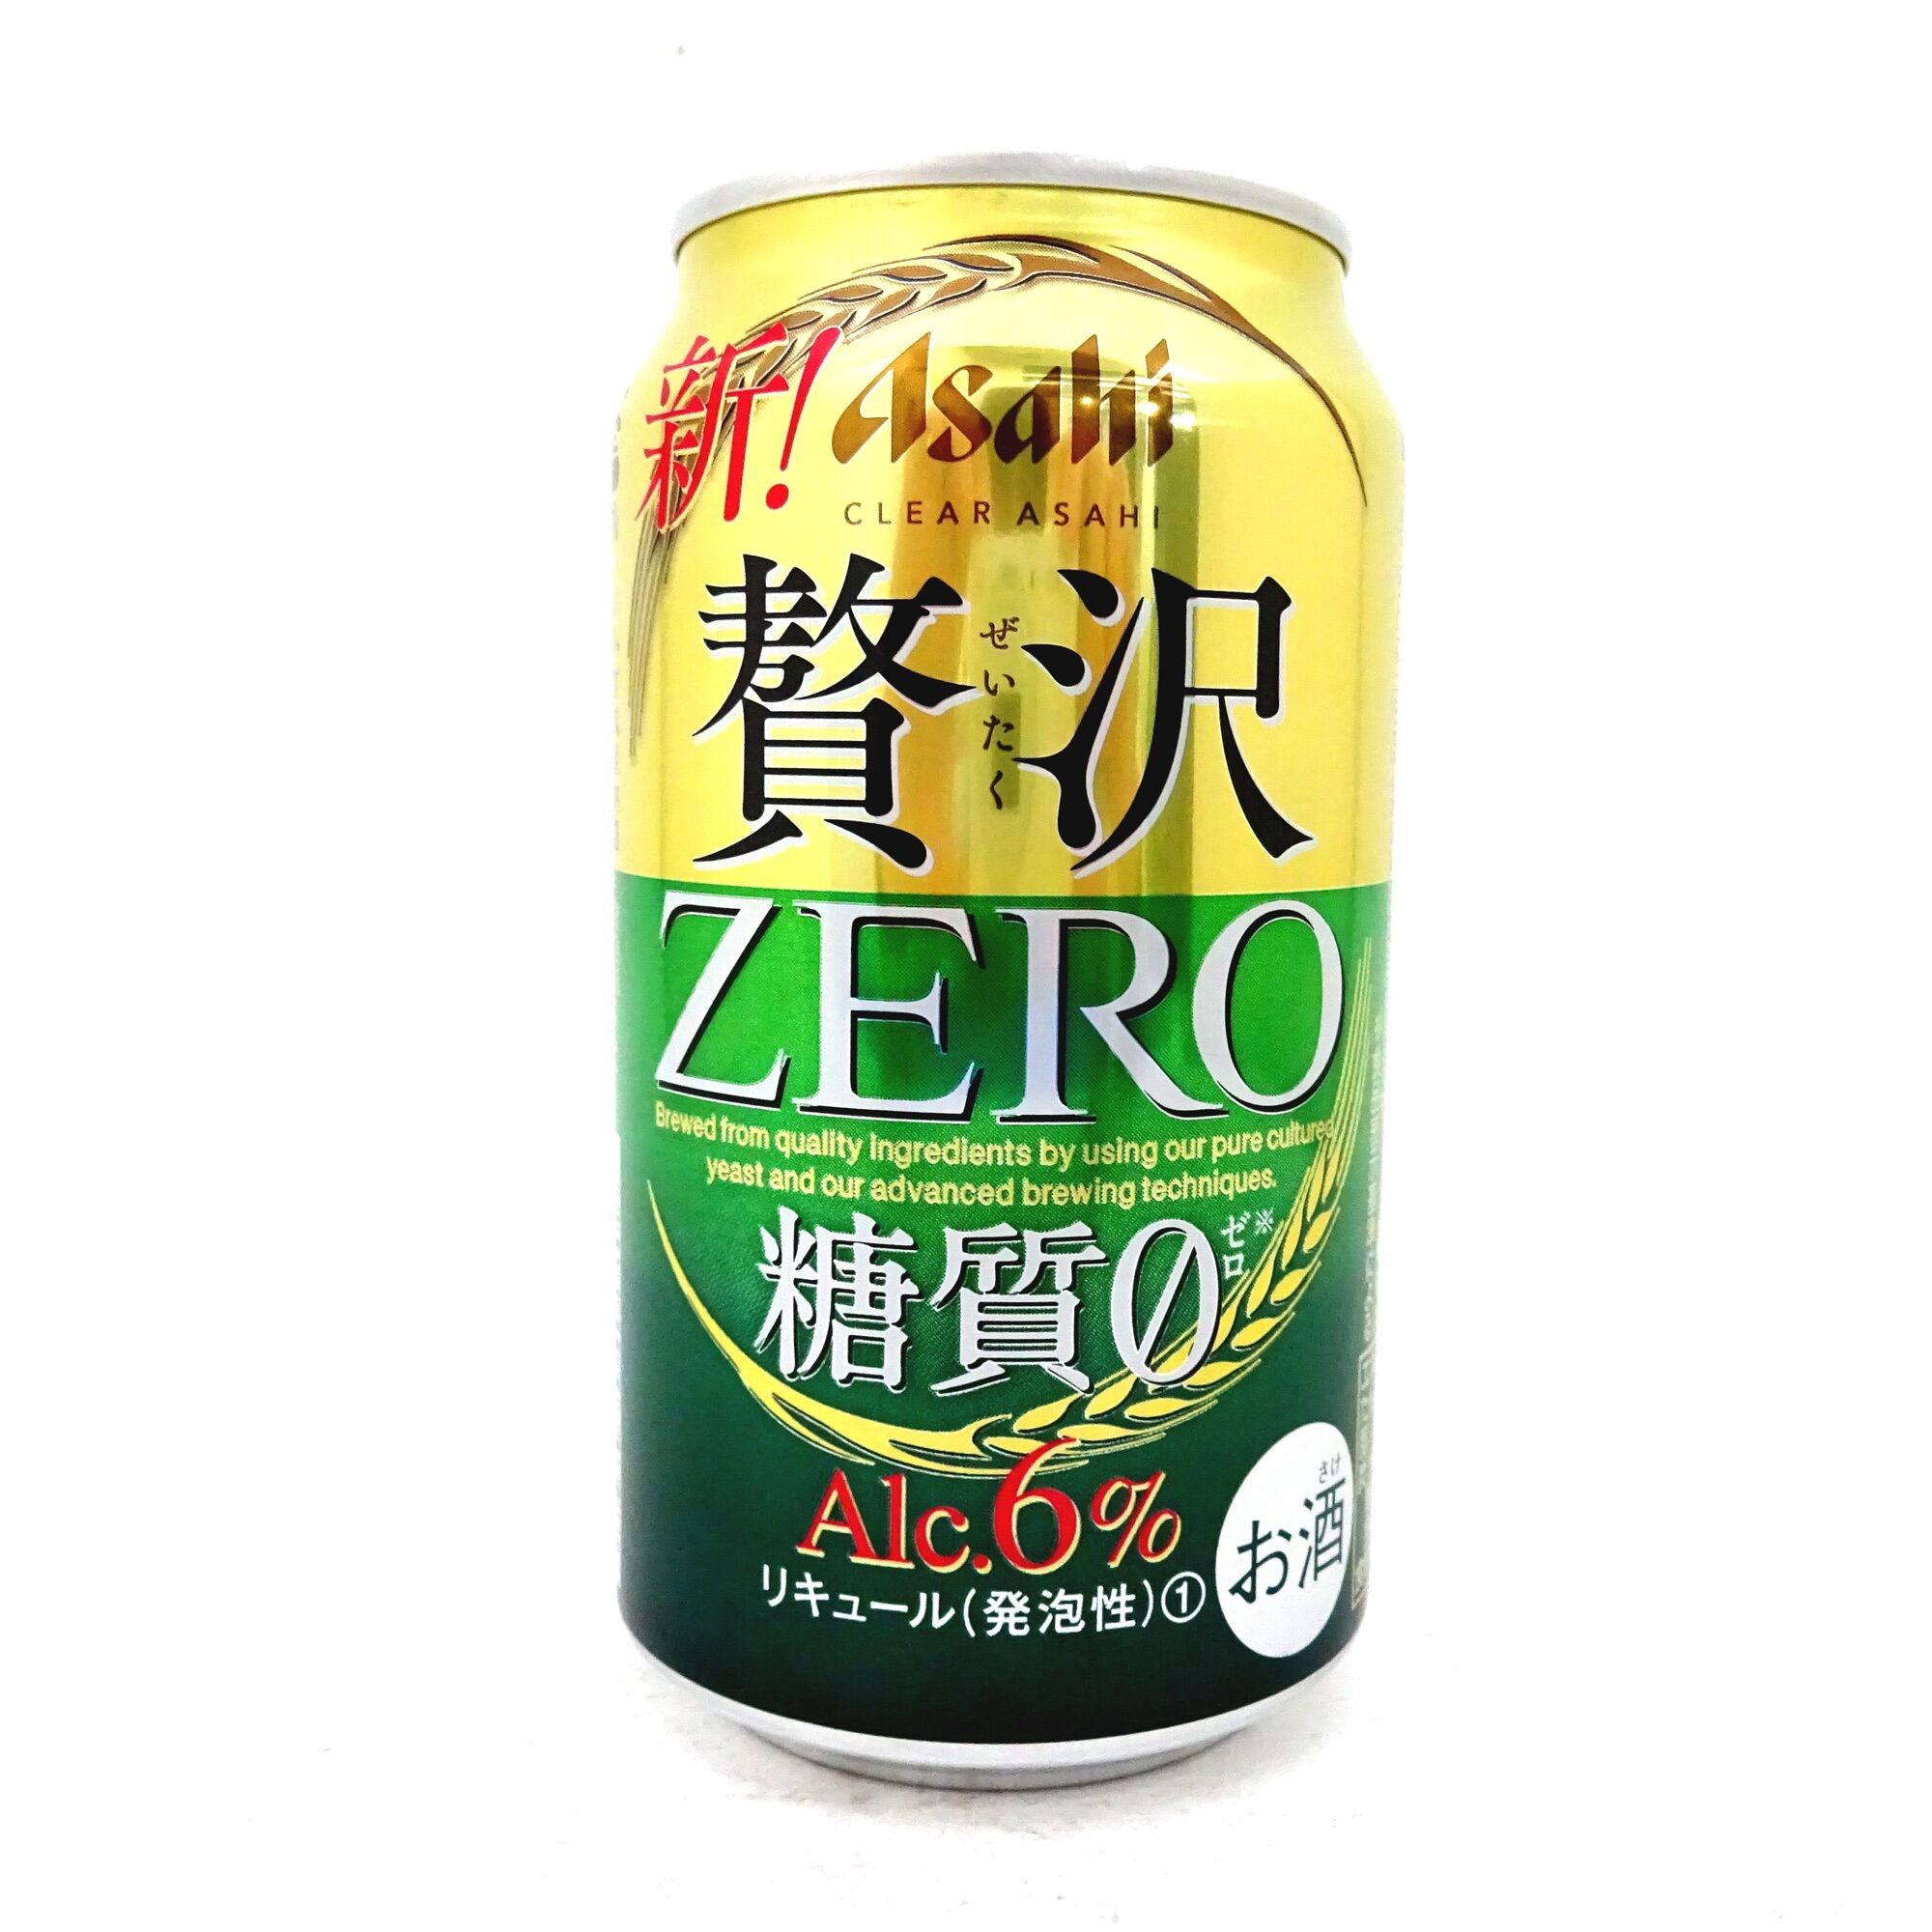 Bia Asahi Clear Asahi Zero ( Beer Asahi Zero )